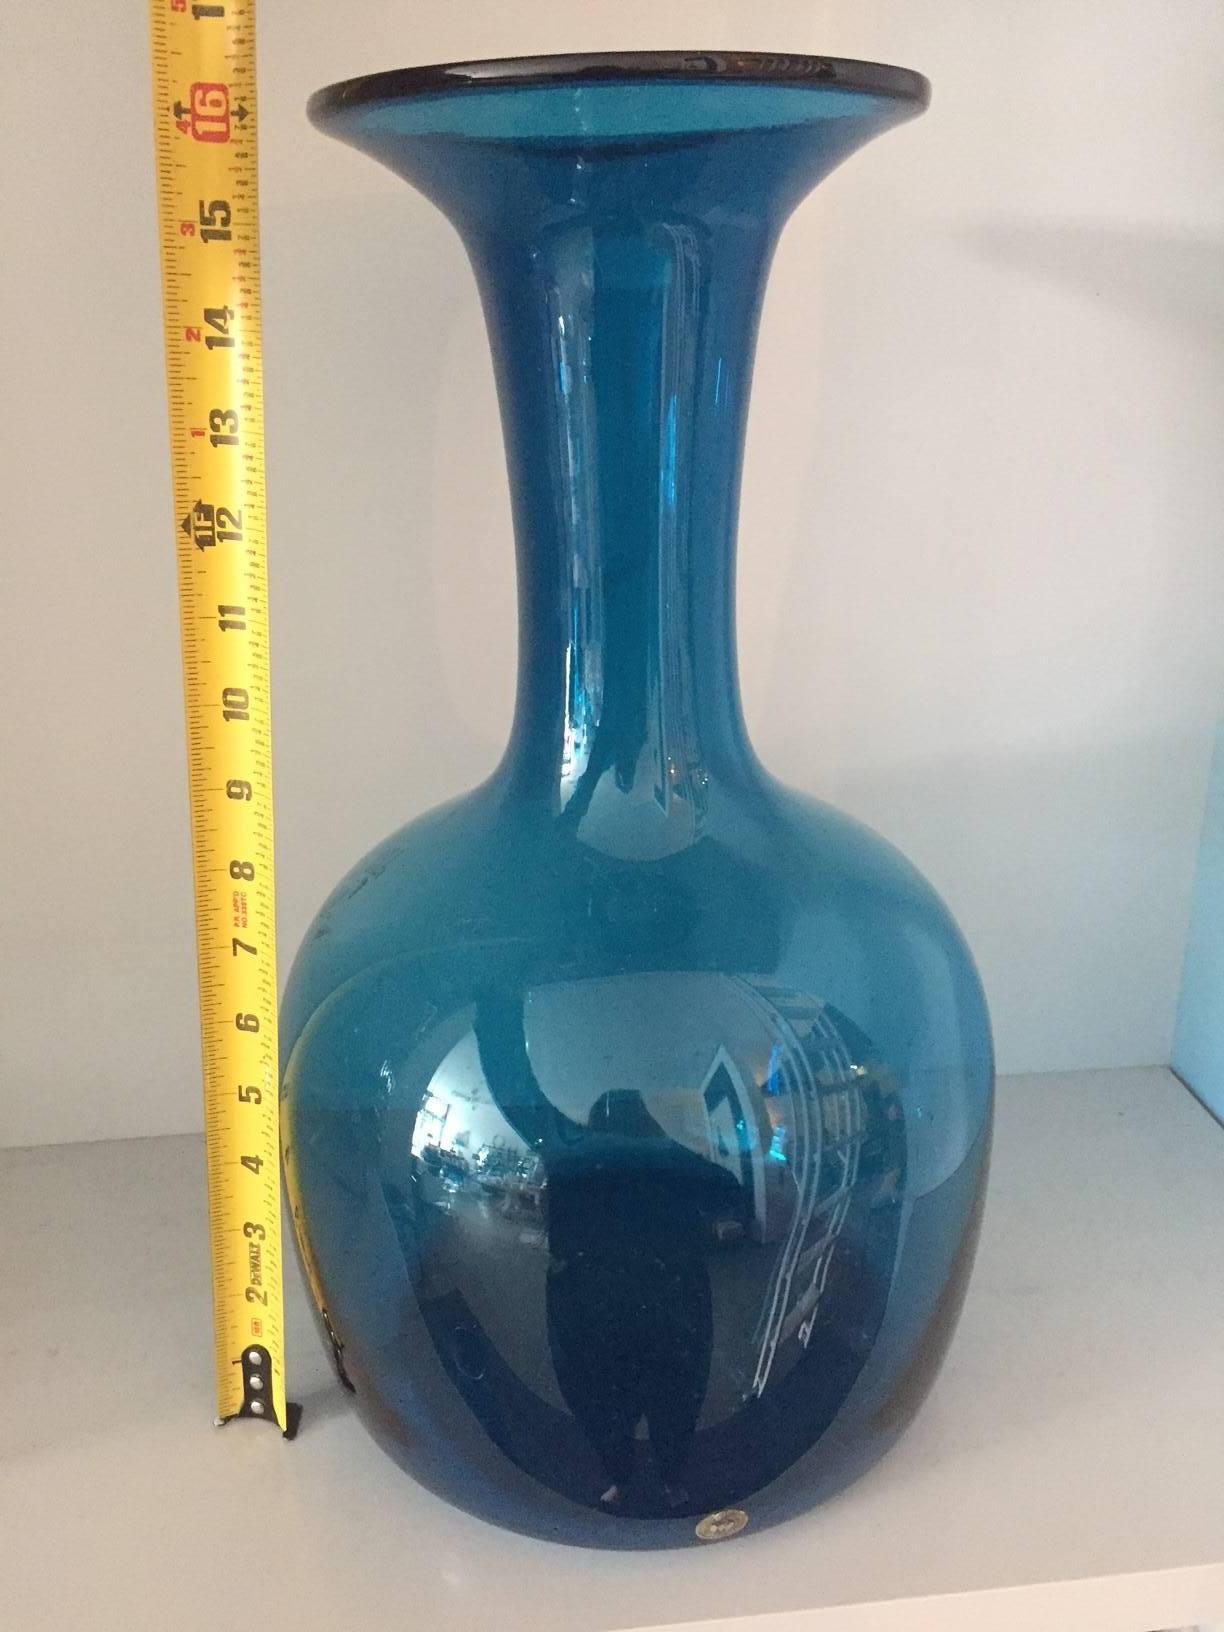 Blue glass Blenko vase.